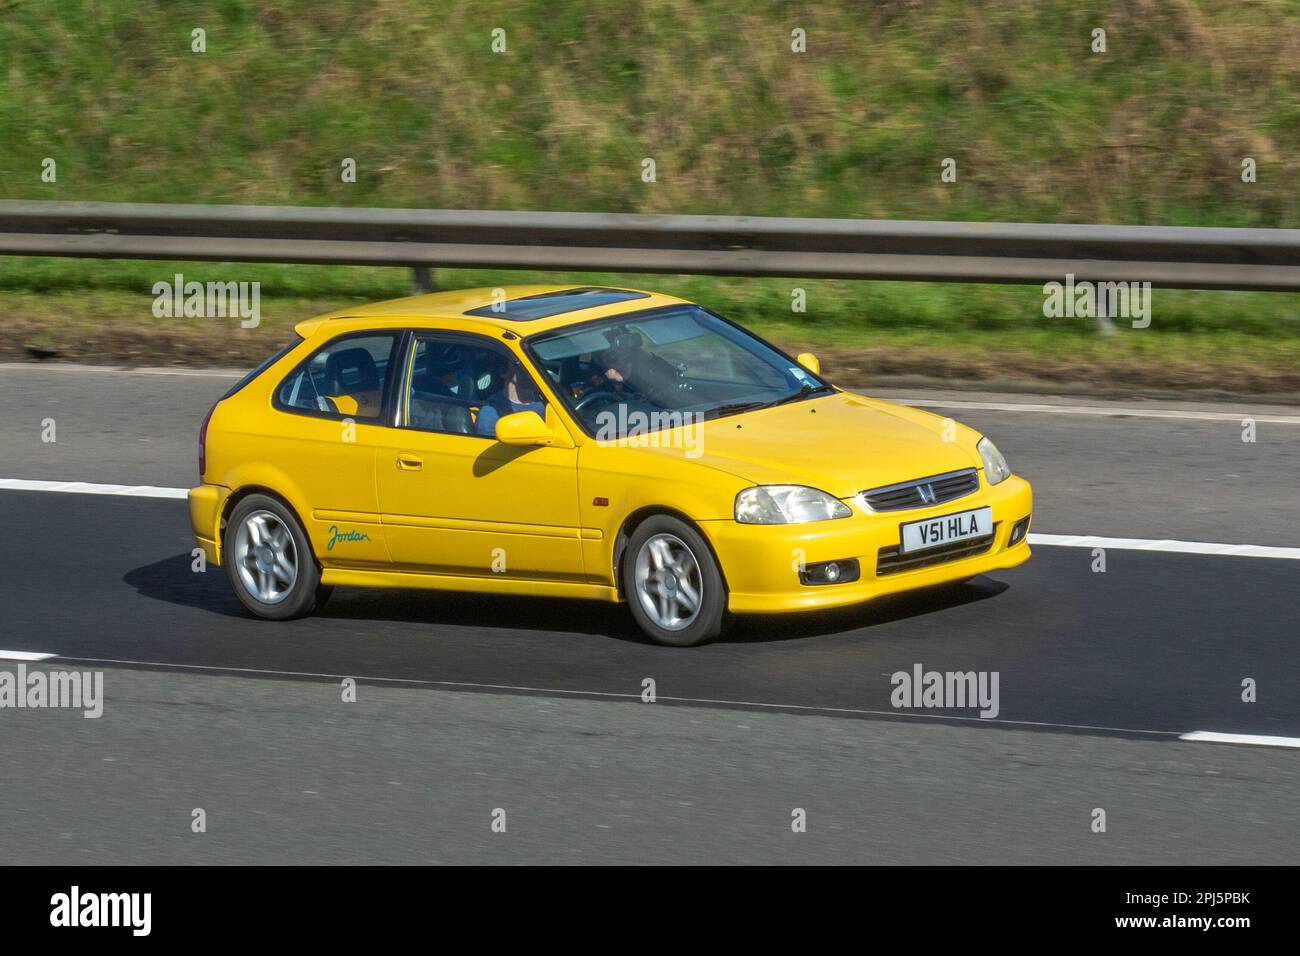 1999 90s années quatre-vingt-dix jaune HONDA CIVIC JORDAN VTI, Limited Edition Hatchback, essence 1595 cc ; sur l'autoroute M61 Royaume-Uni Banque D'Images